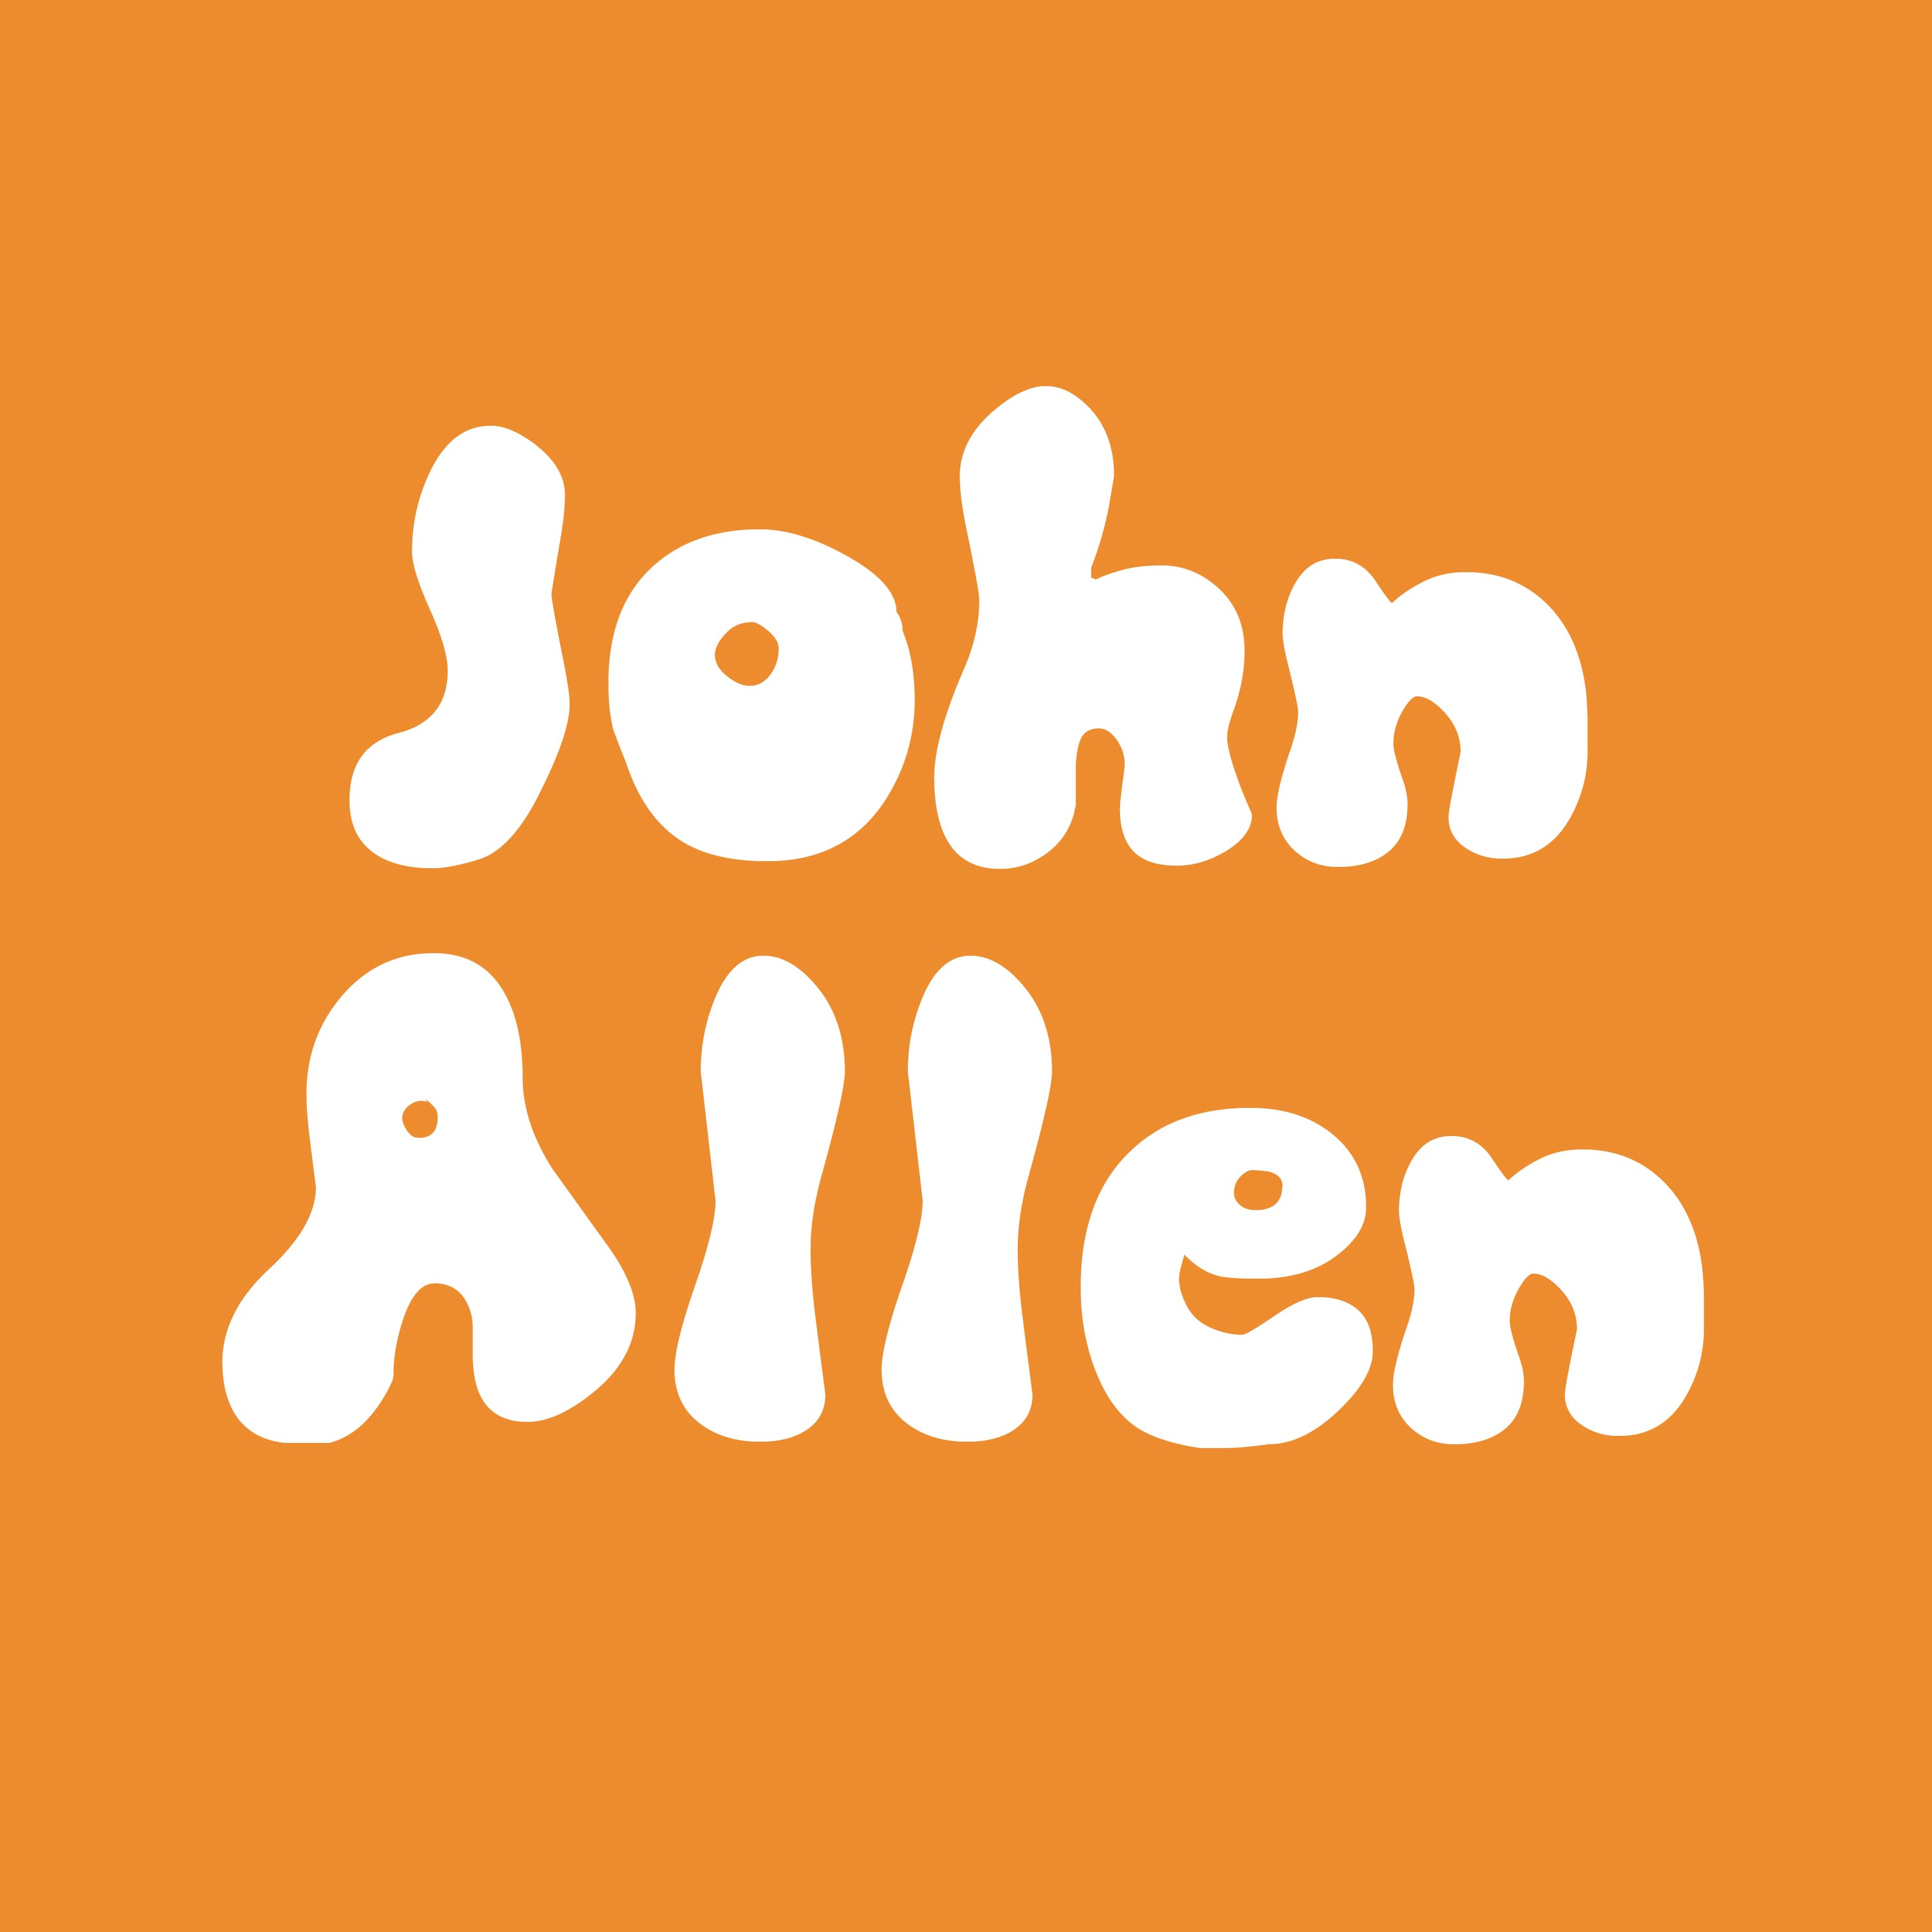 Psilocybe cubensis var "John Allen" spores